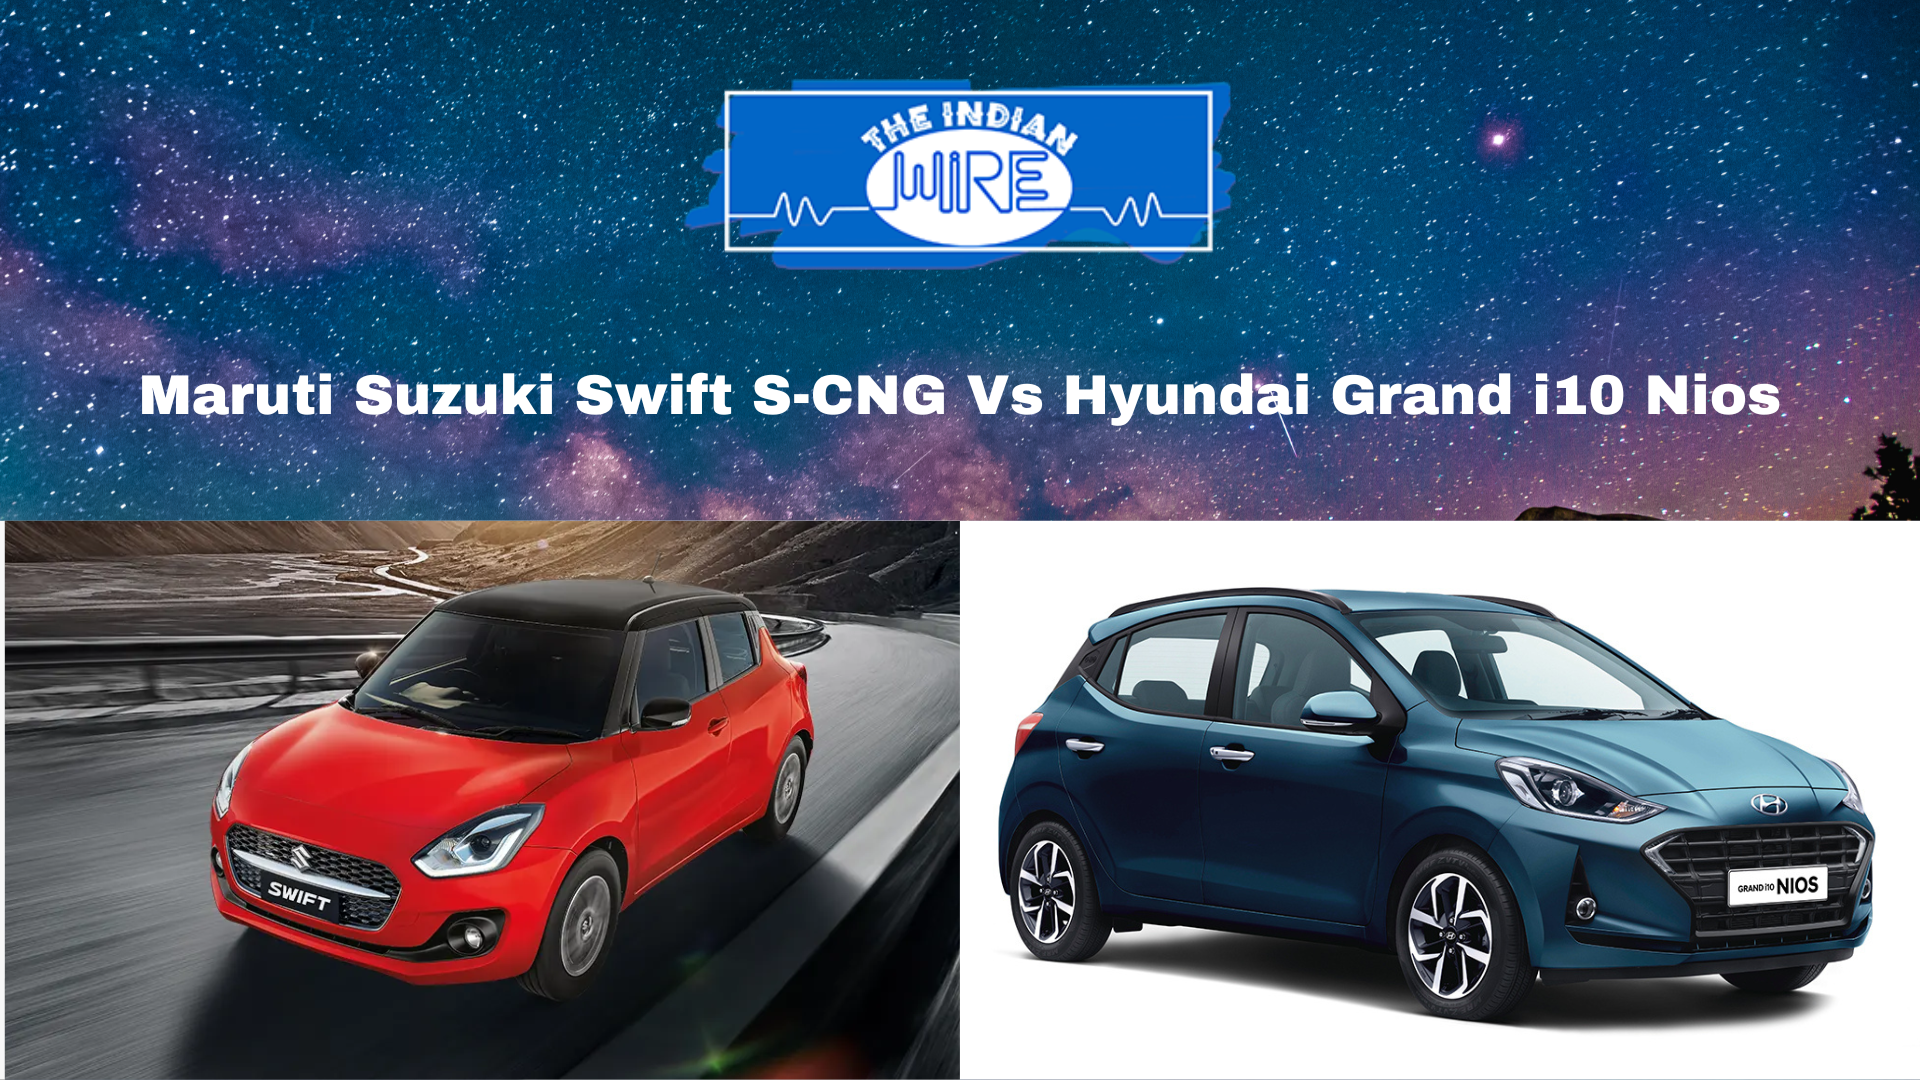 MS Swift S-CNG Vs Hyundai Grand i10 Nios CNG